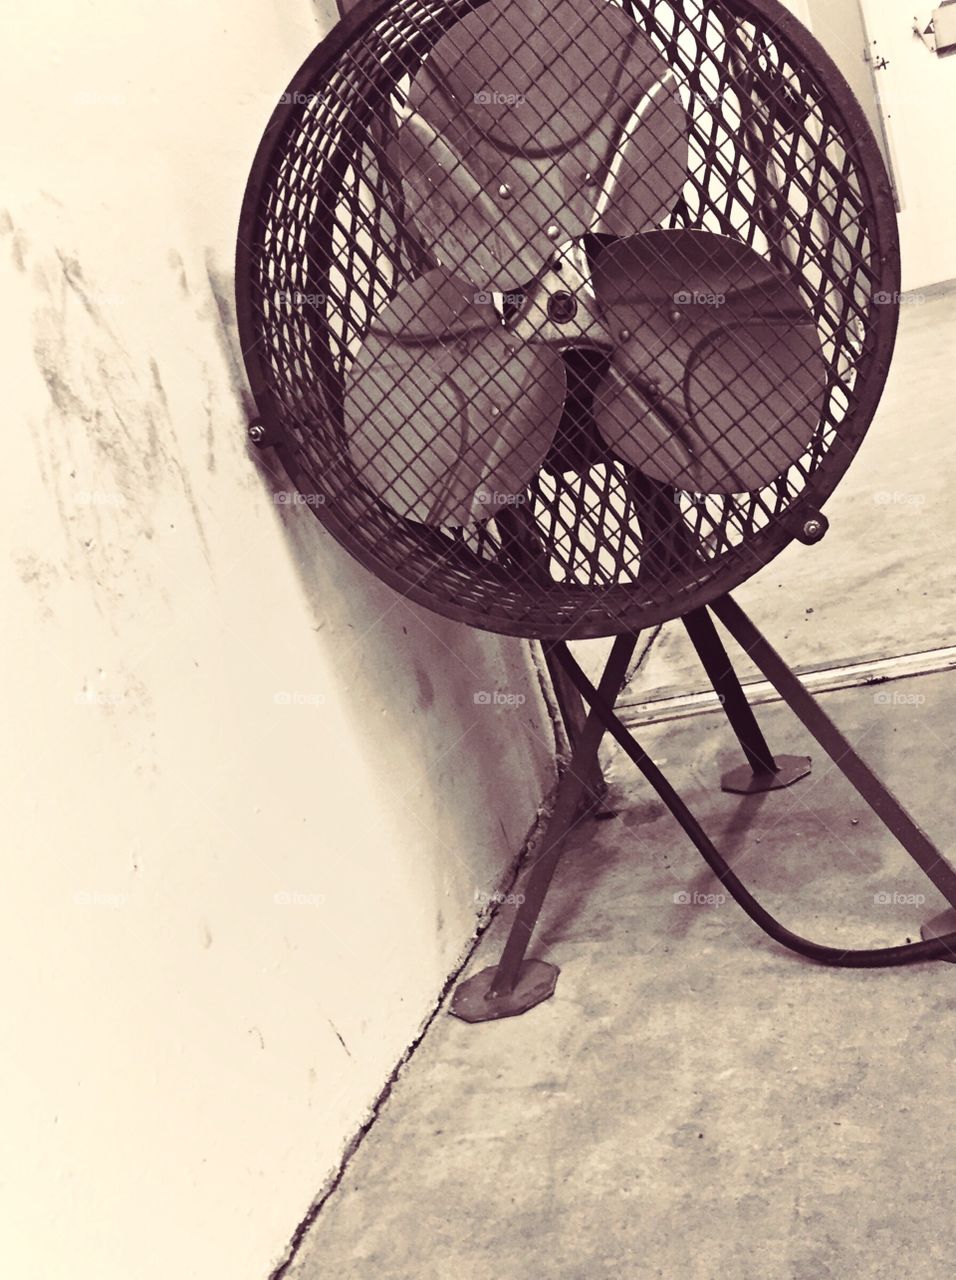 My fan.